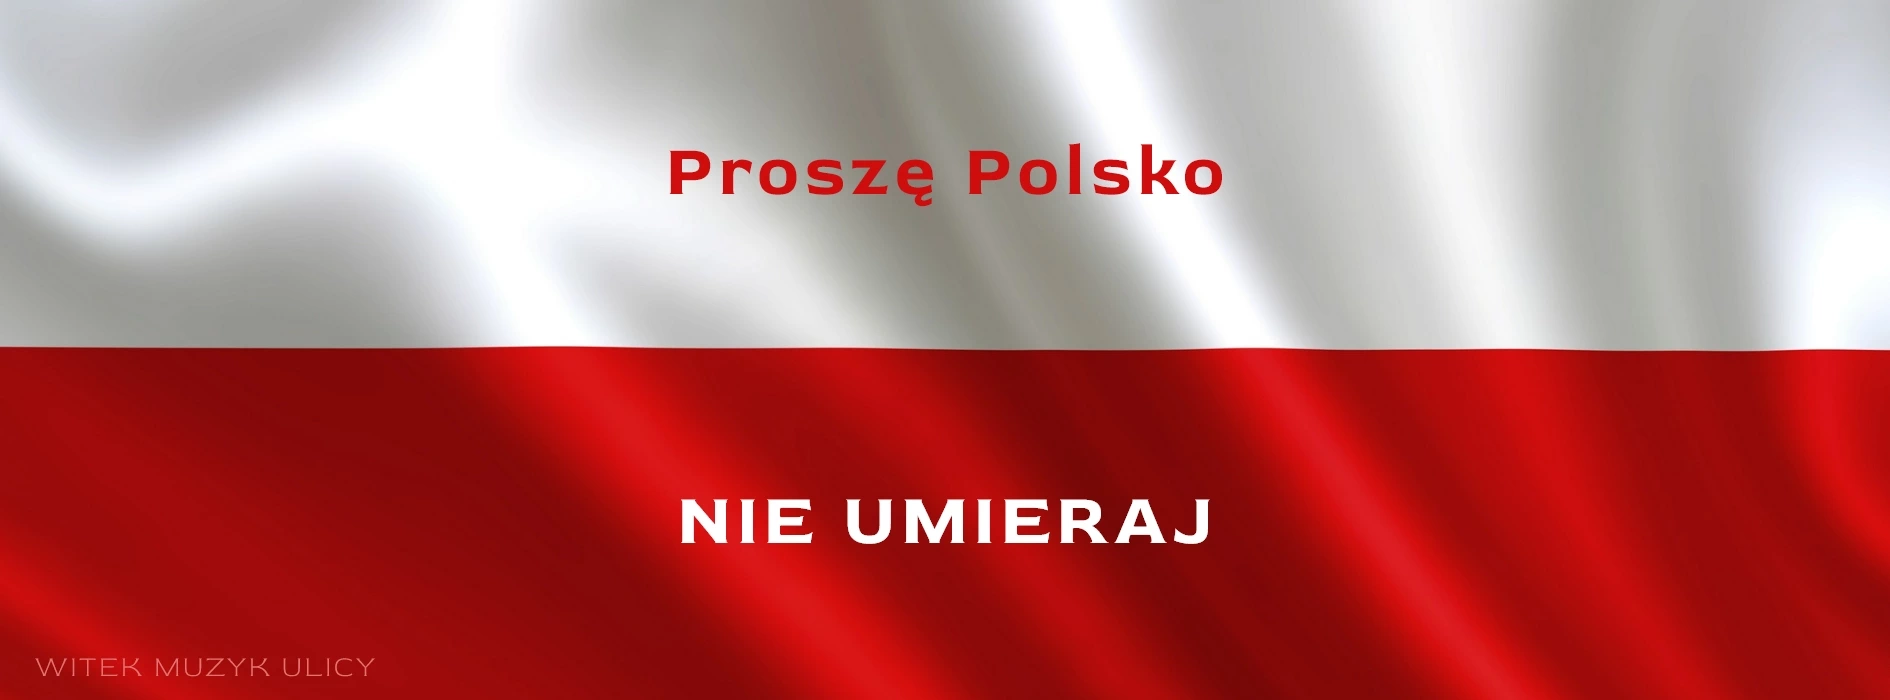 Proszę Polsko NIE UMIERAJ